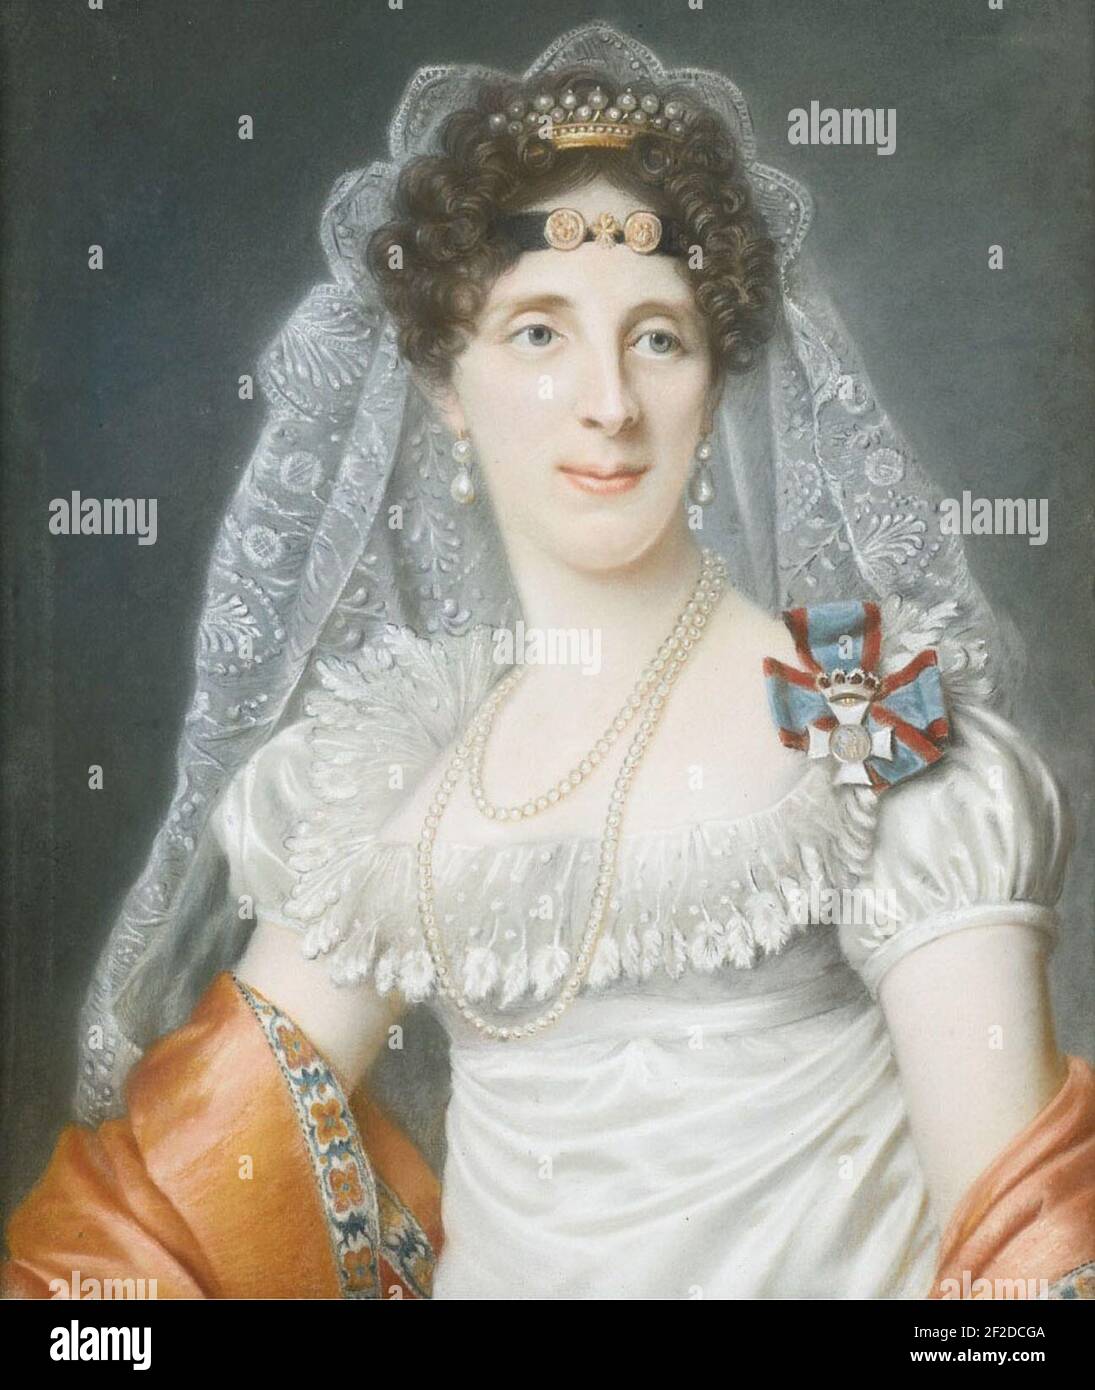 Ritratto della duchessa Maria Elisabetta in Baviera. Foto Stock